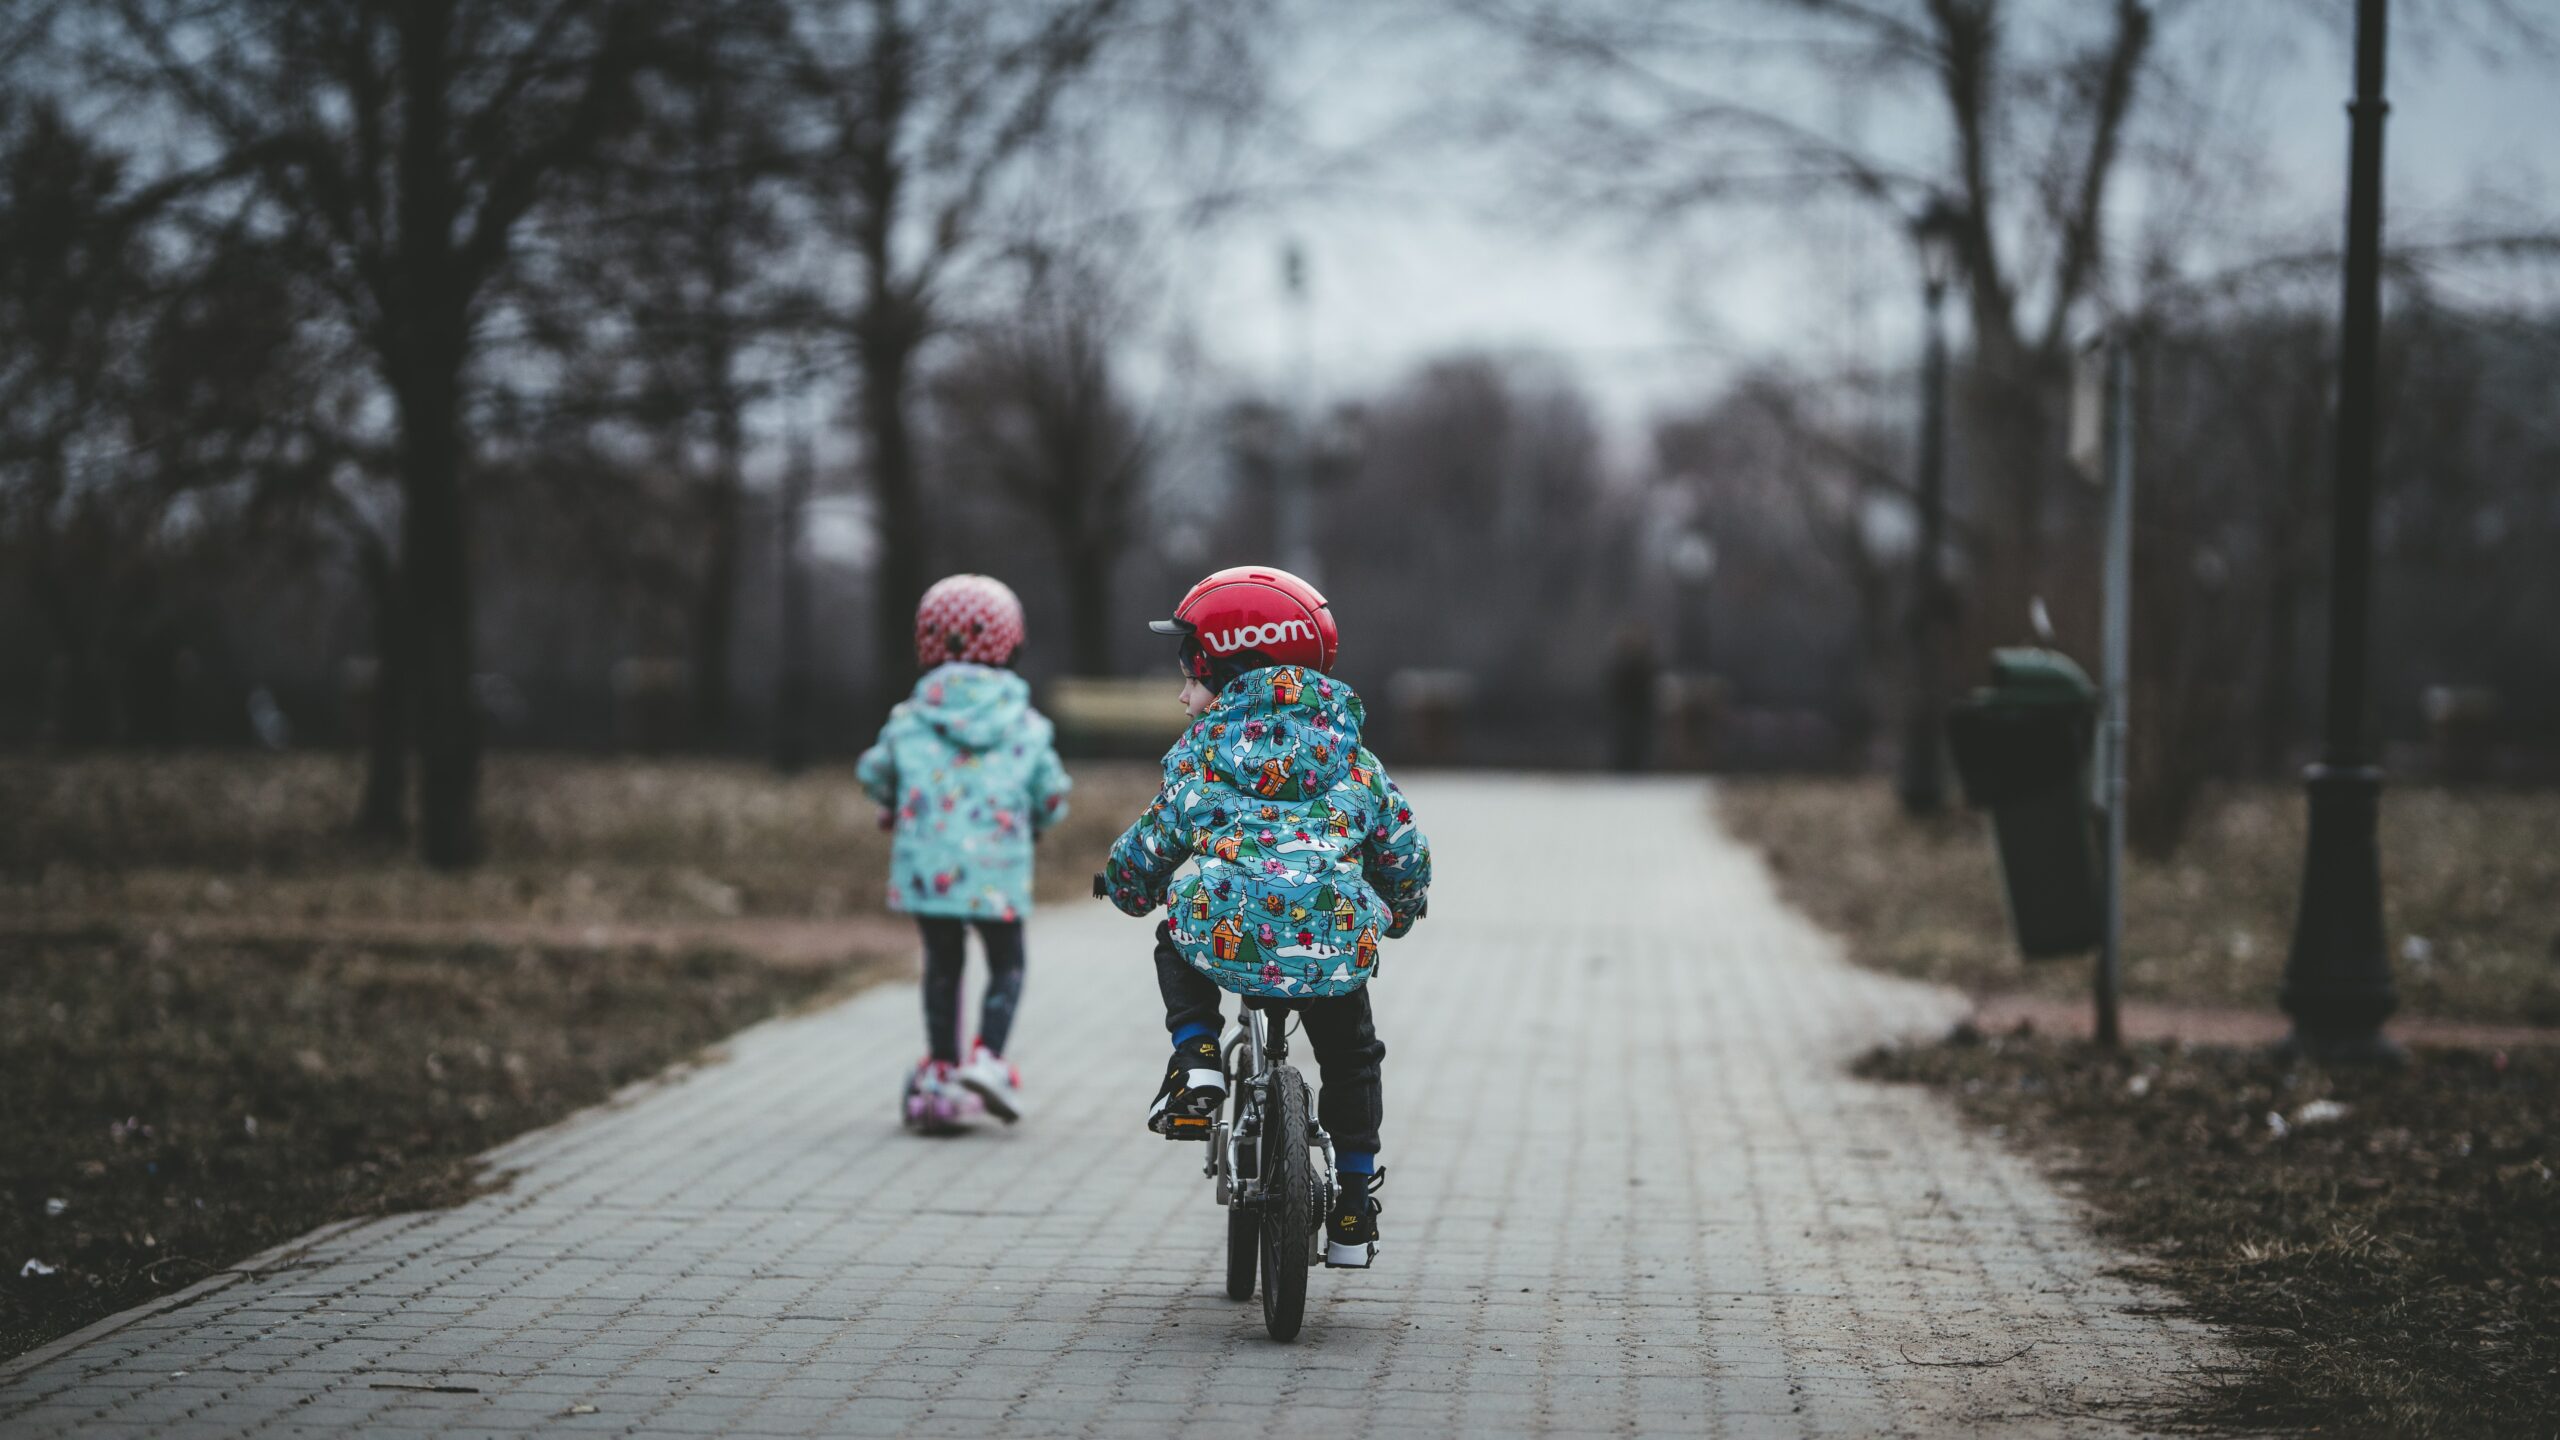 værdi Kænguru afbrudt Guide til valg af børnecykel >> Find den rette størrelse | Smartcykler